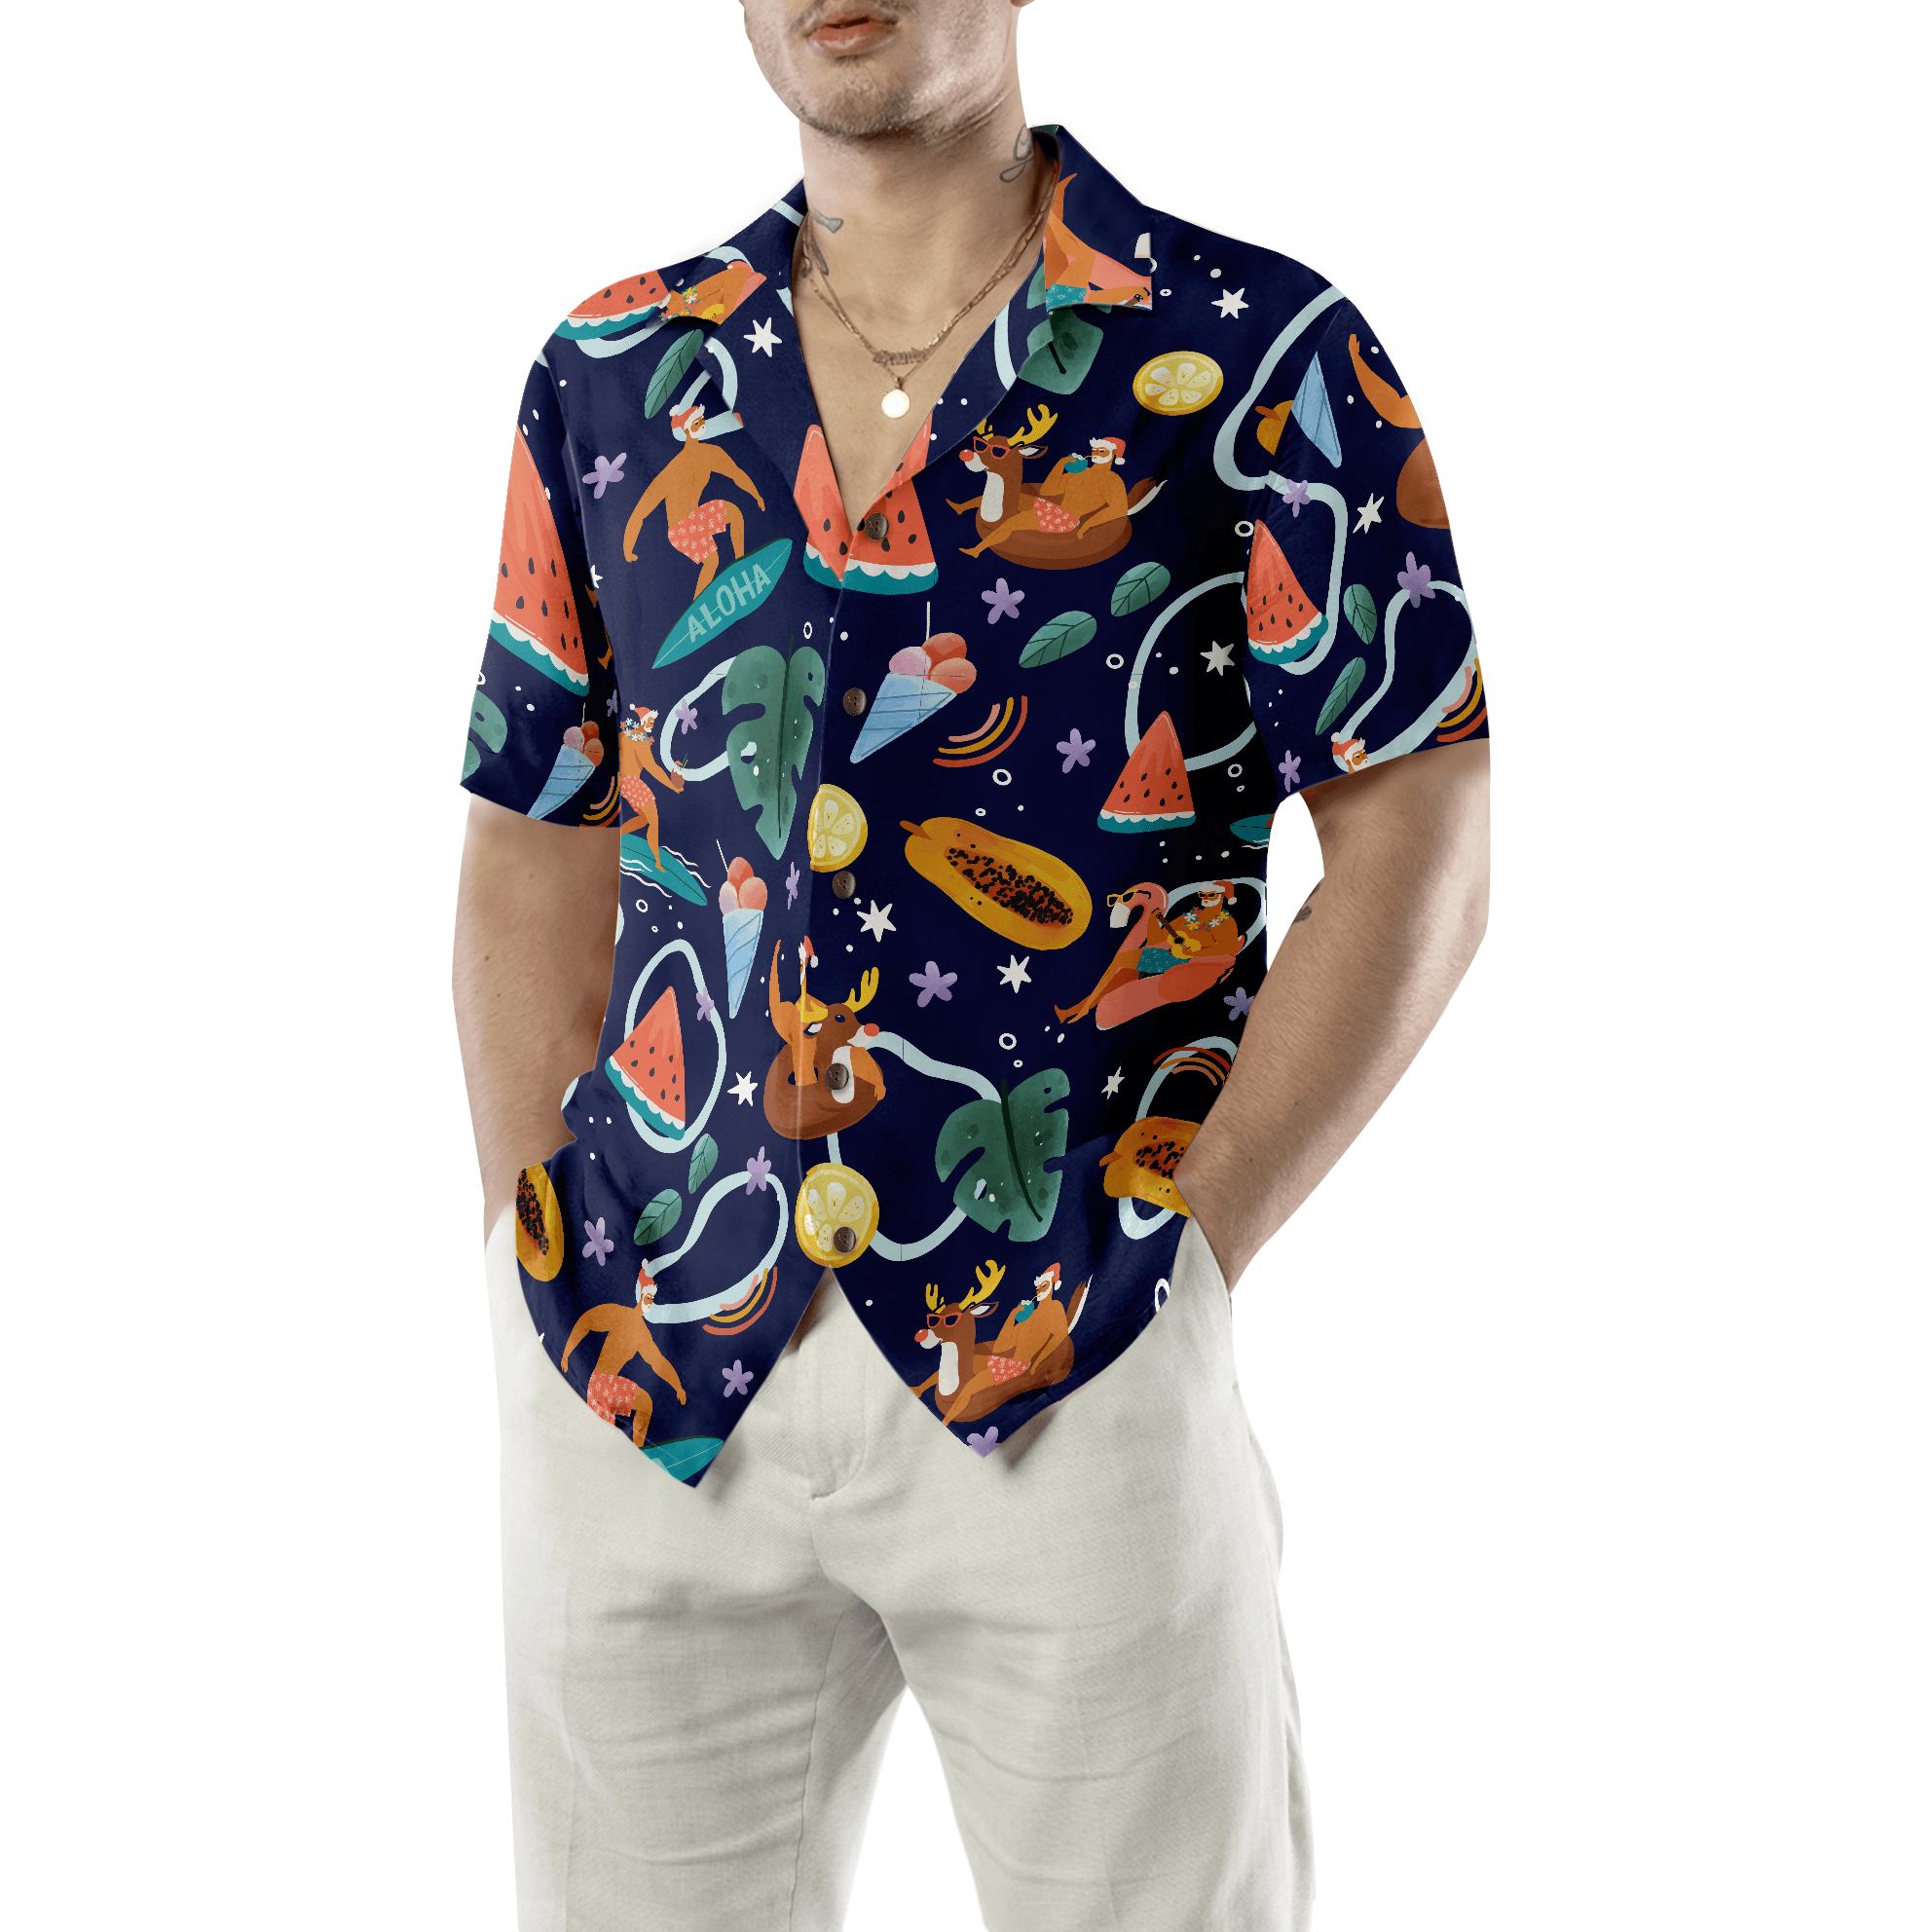 Hyperfavor Santa Beach 1 Pattern Hawaiian shirt, Christmas Shirts Short Sleeve Button Down Shirt For Men And Women